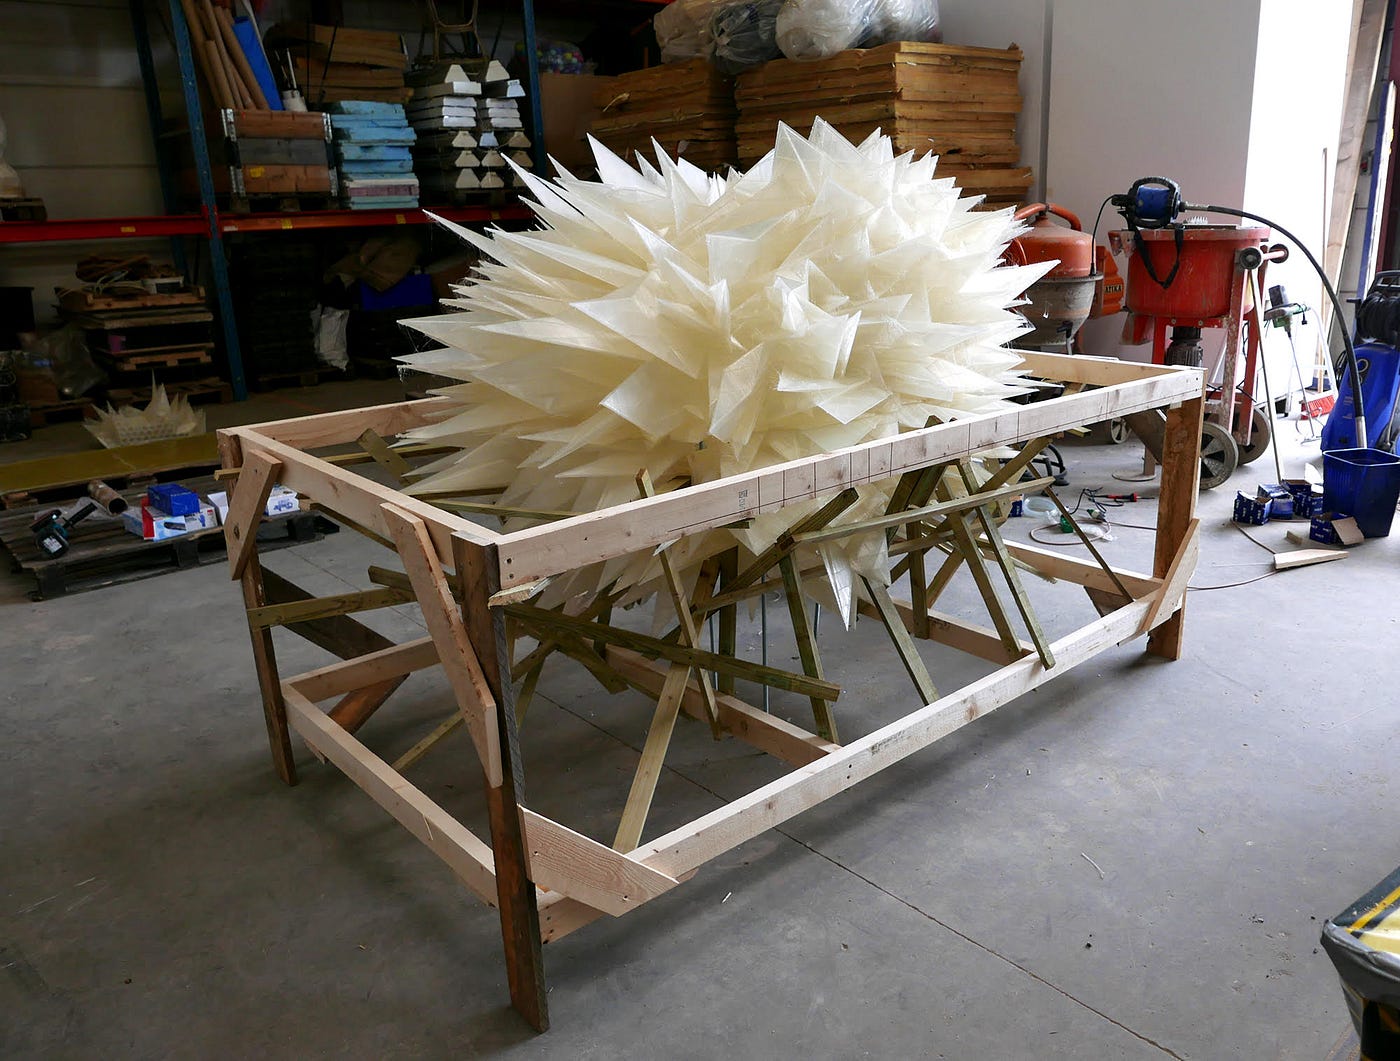 Kunsteren, der brugte sin 3D-printer til at printe 2D | by Troels Kølln |  Medium